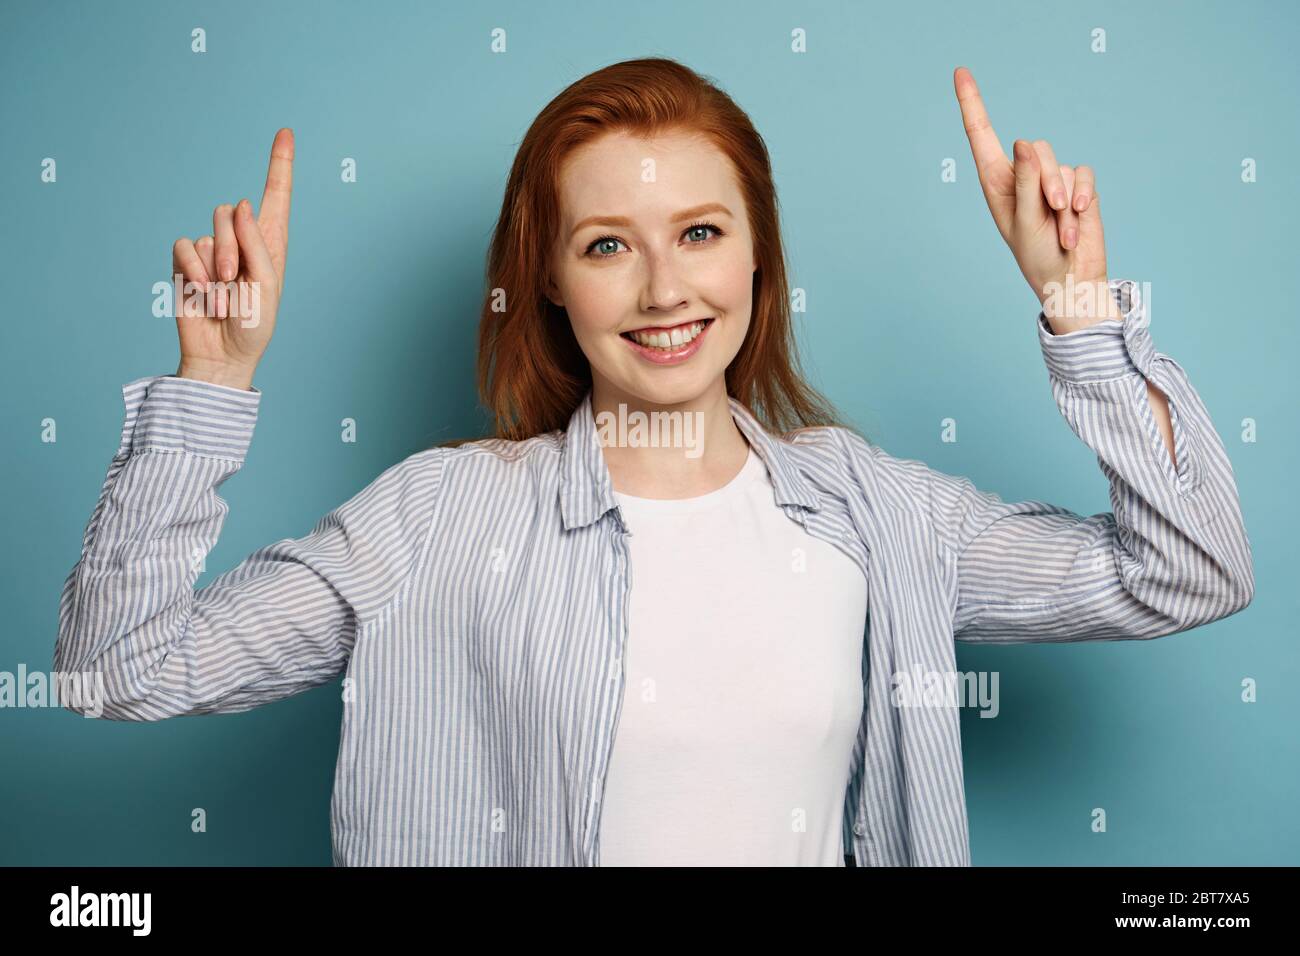 La ragazza dai capelli rossi in una camicia a righe sorride e punta le dita verso la parte superiore in piedi su uno sfondo blu. Foto Stock